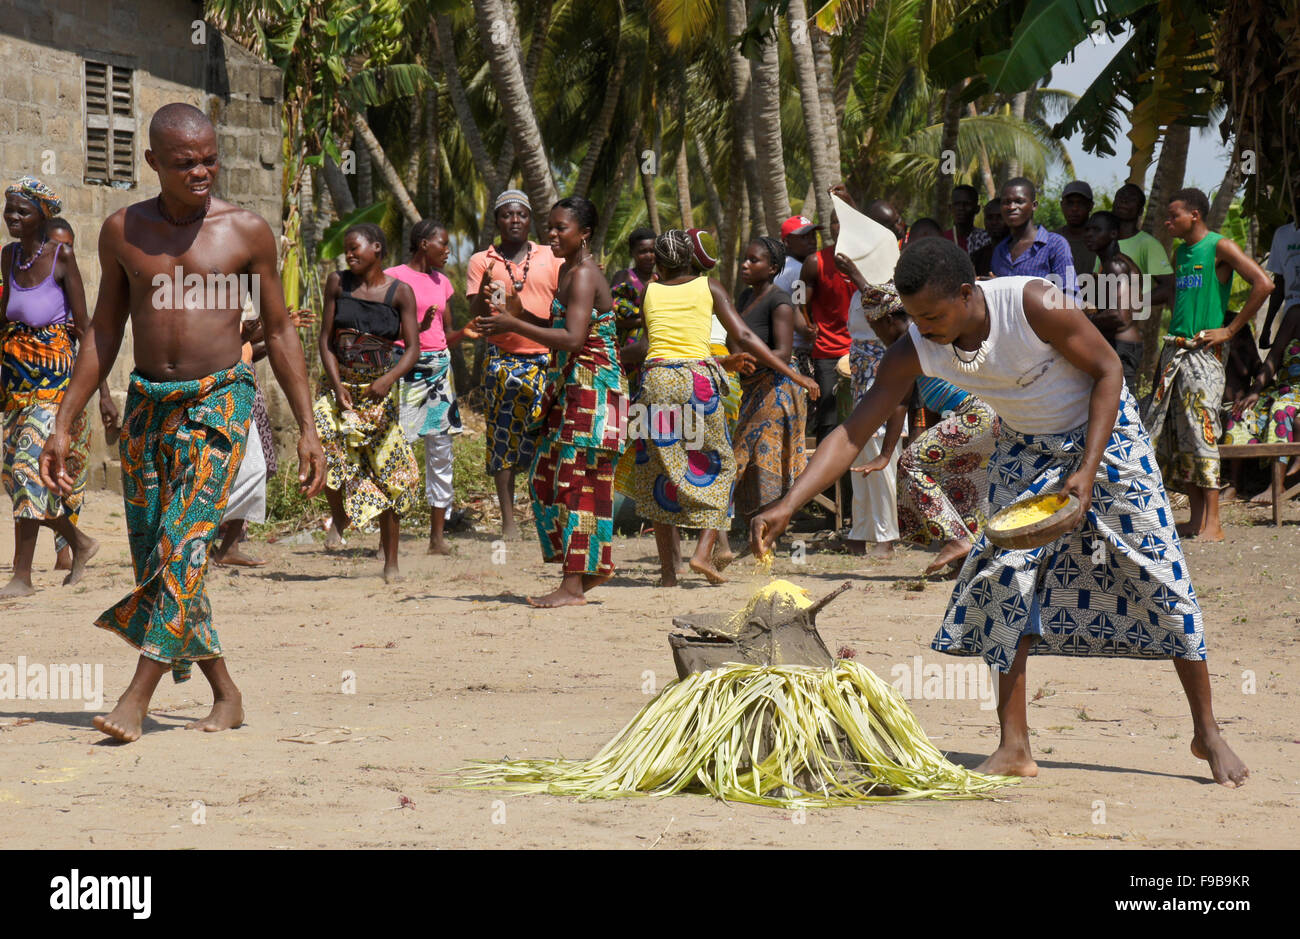 Man making offrant peu d'esprit dans Zangbeto cérémonie, Heve-Grand village Popo, Bénin Banque D'Images